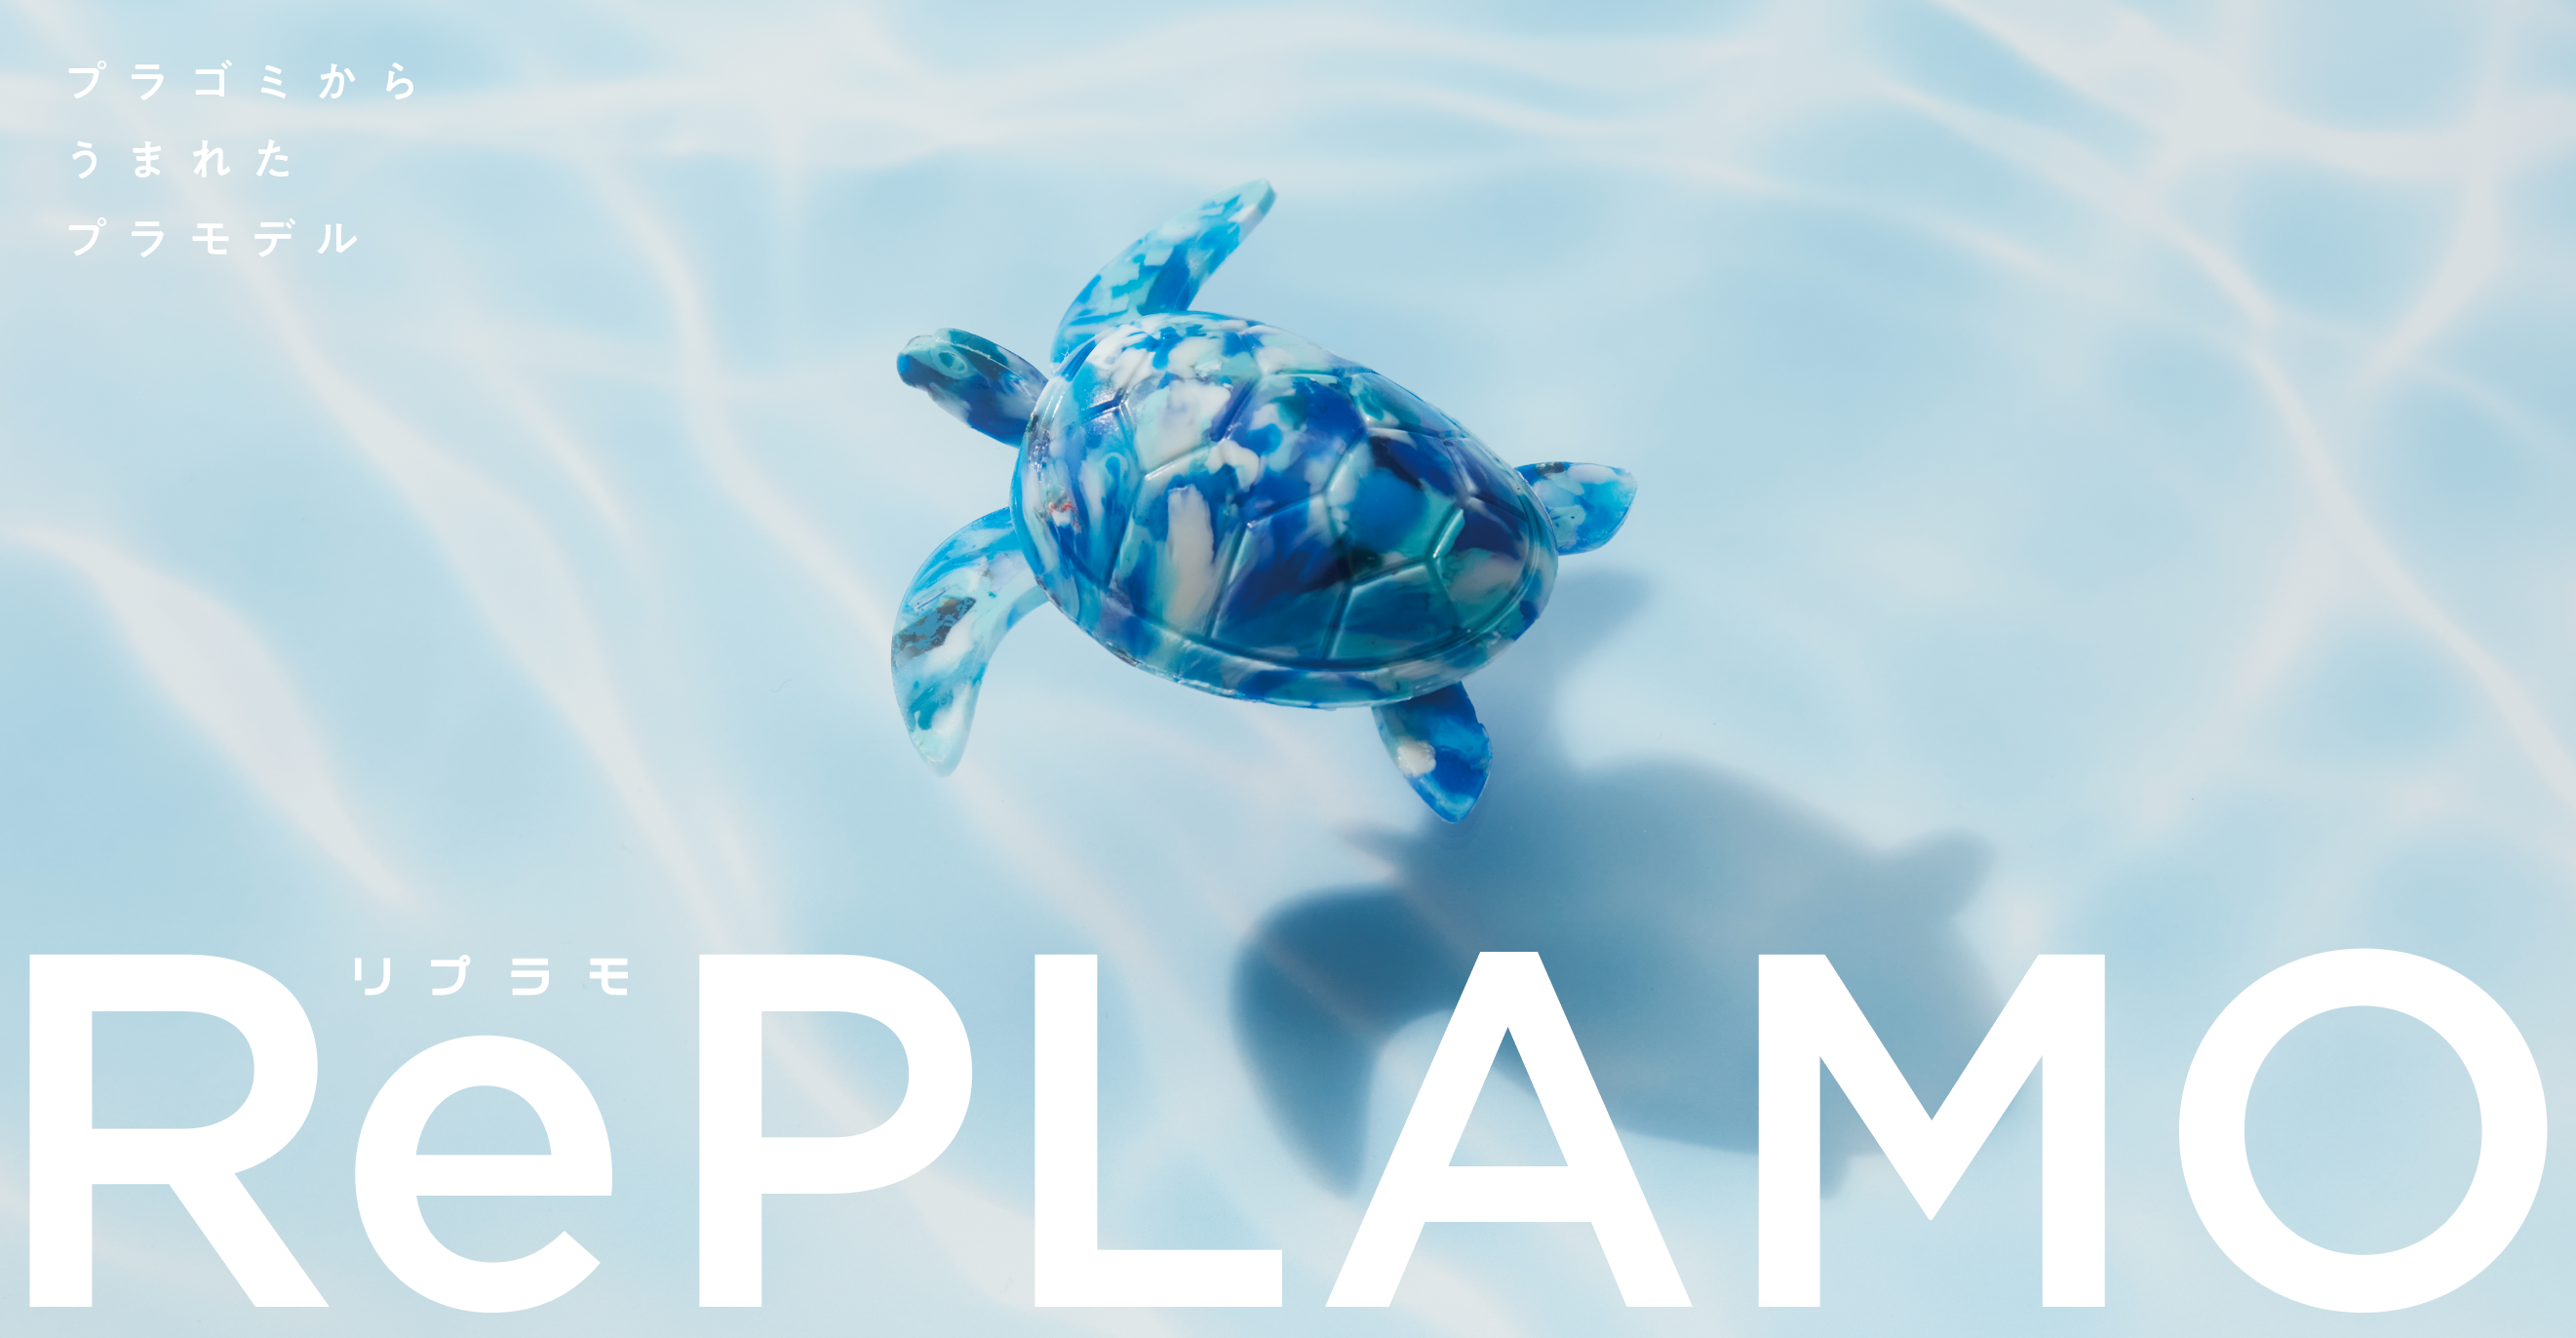 プラスチックごみから生まれたプラモデル「RePLAMO」のサブ画像1